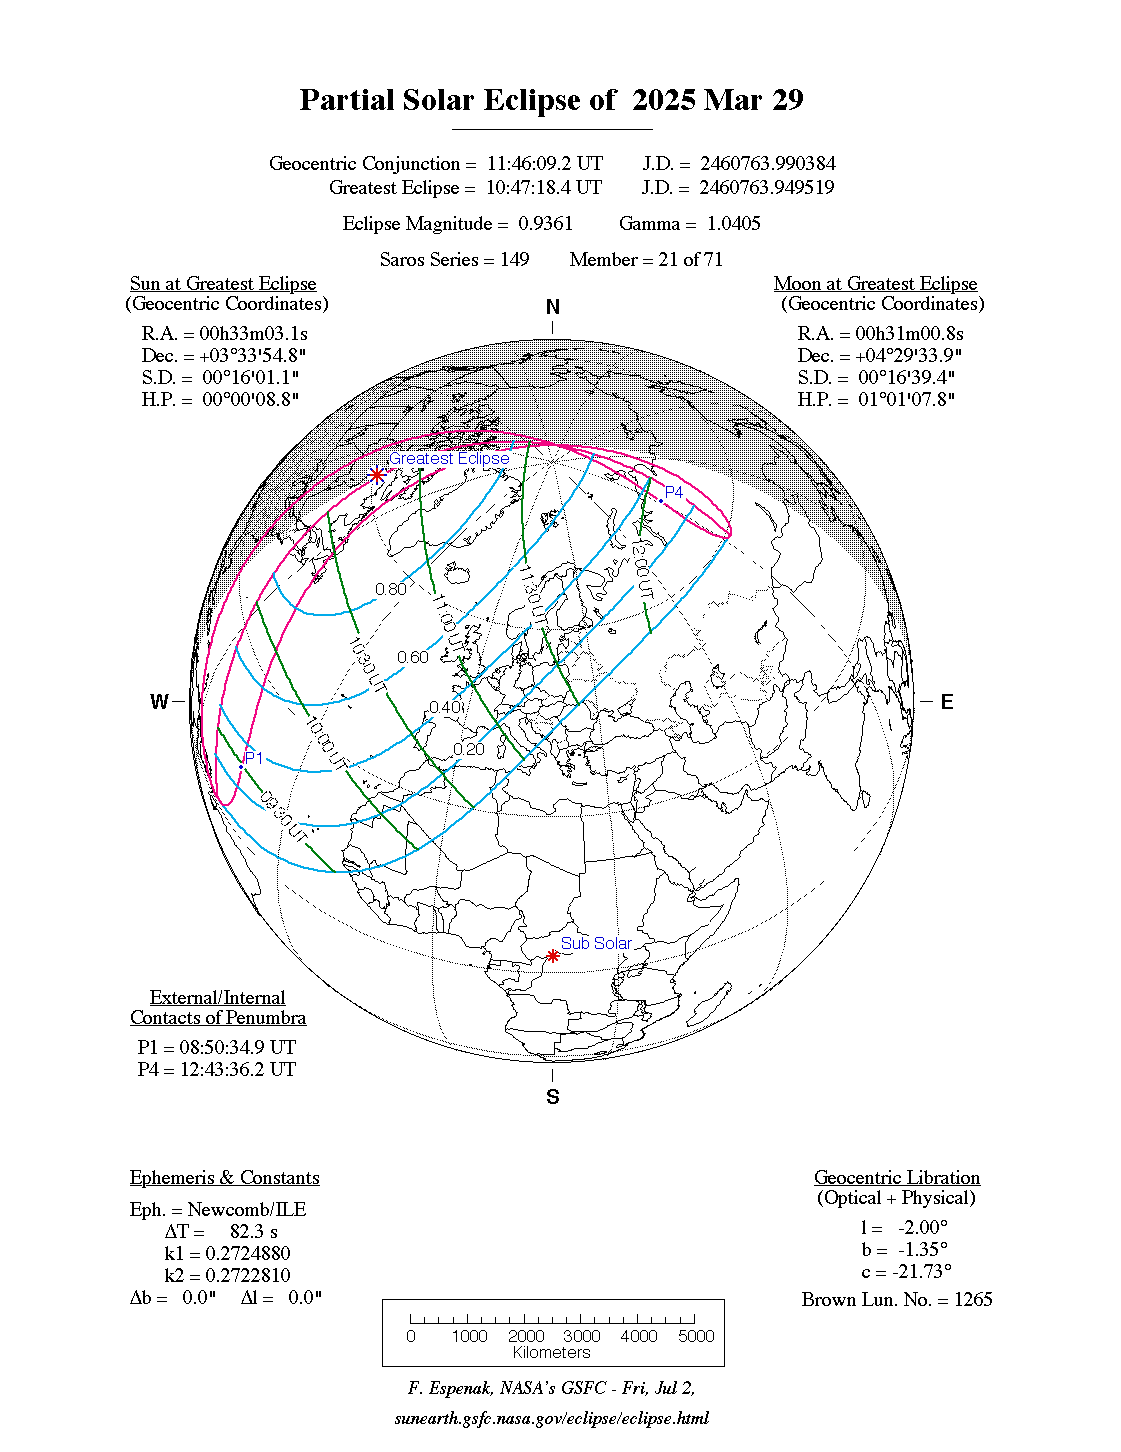 Verlauf der Partiellen Sonnenfinsternis am 29.03.2025